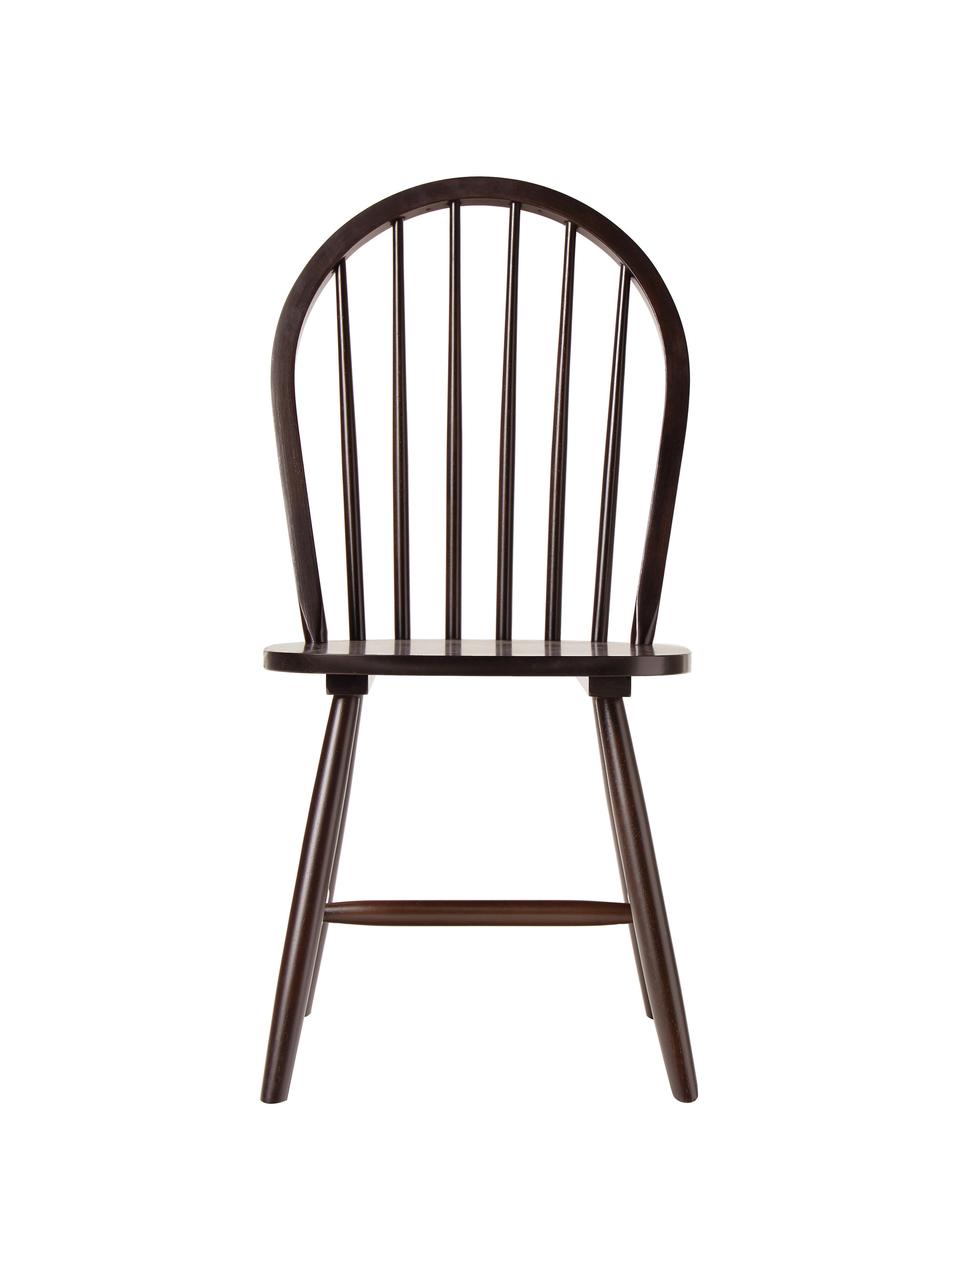 Krzesło z drewna w stylu windsor Megan, 2 szt., Drewno kauczukowe lakierowane, Ciemne drewno naturalne, S 46 x G 51 cm